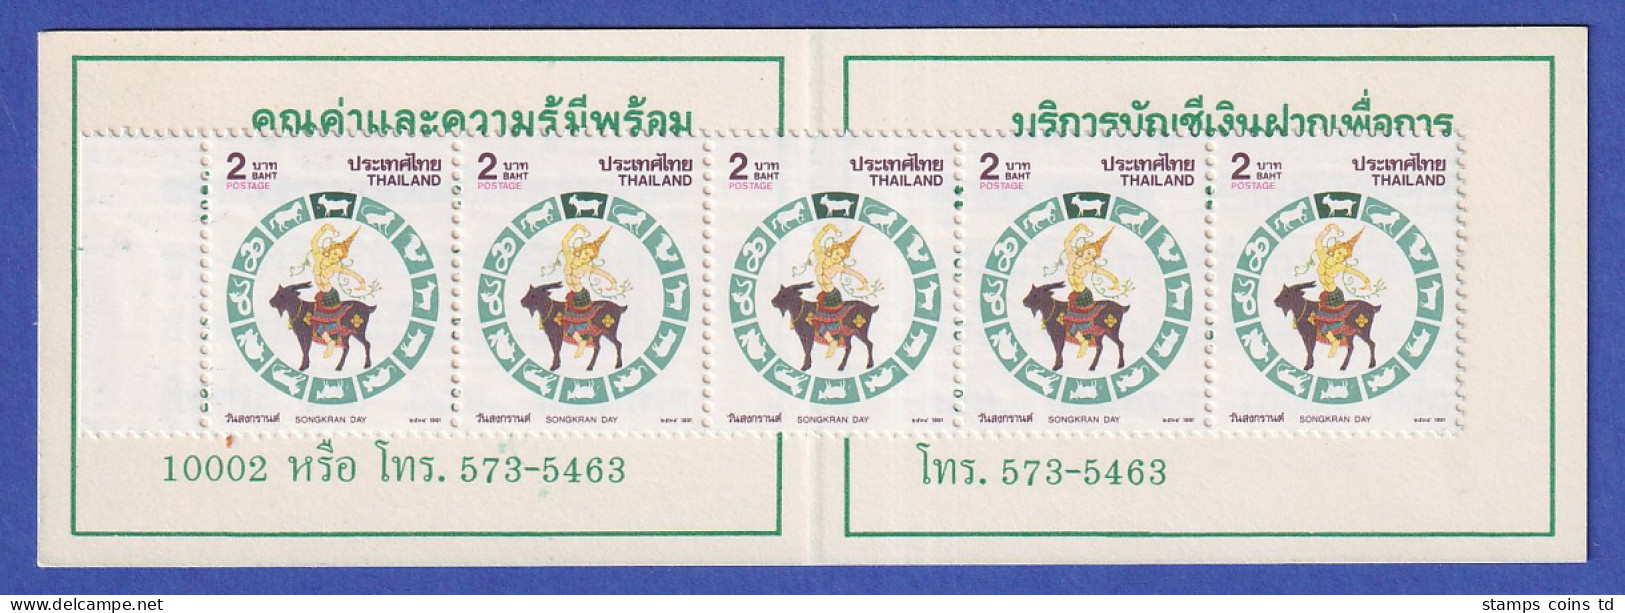 Thailand 1991 Songkran-Tag Mi.-Nr. 1410 A Markenheftchen Postfrisch ** / MNH - Thailand